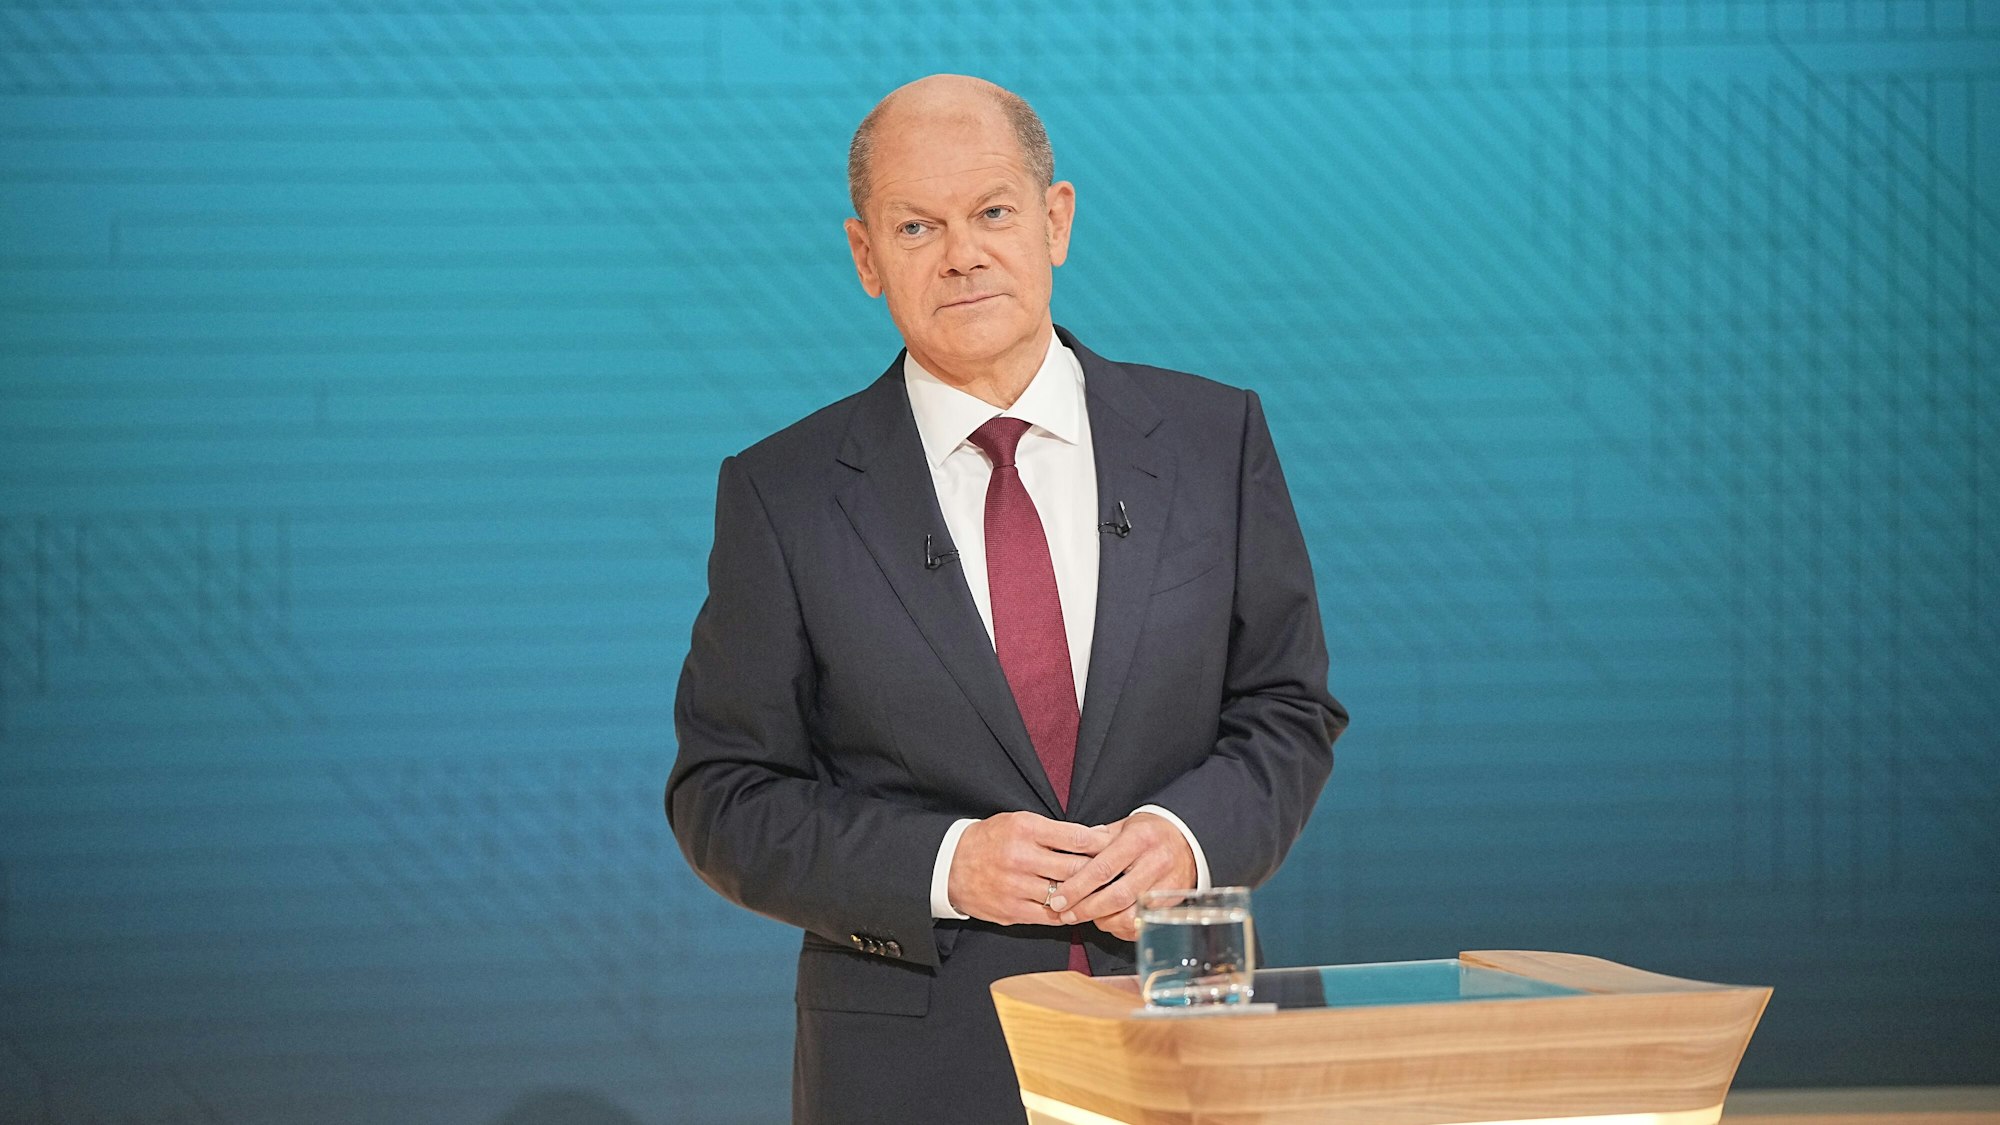 Kanzlerkandidat Olaf Scholz (SPD) beim zweiten TV-Triell gegen Armin Laschet (CDU) und Annalena Baerbock (Grüne): Der ansonsten so coole Politiker zeigte diesmal Nerven und wurde auch mal laut.